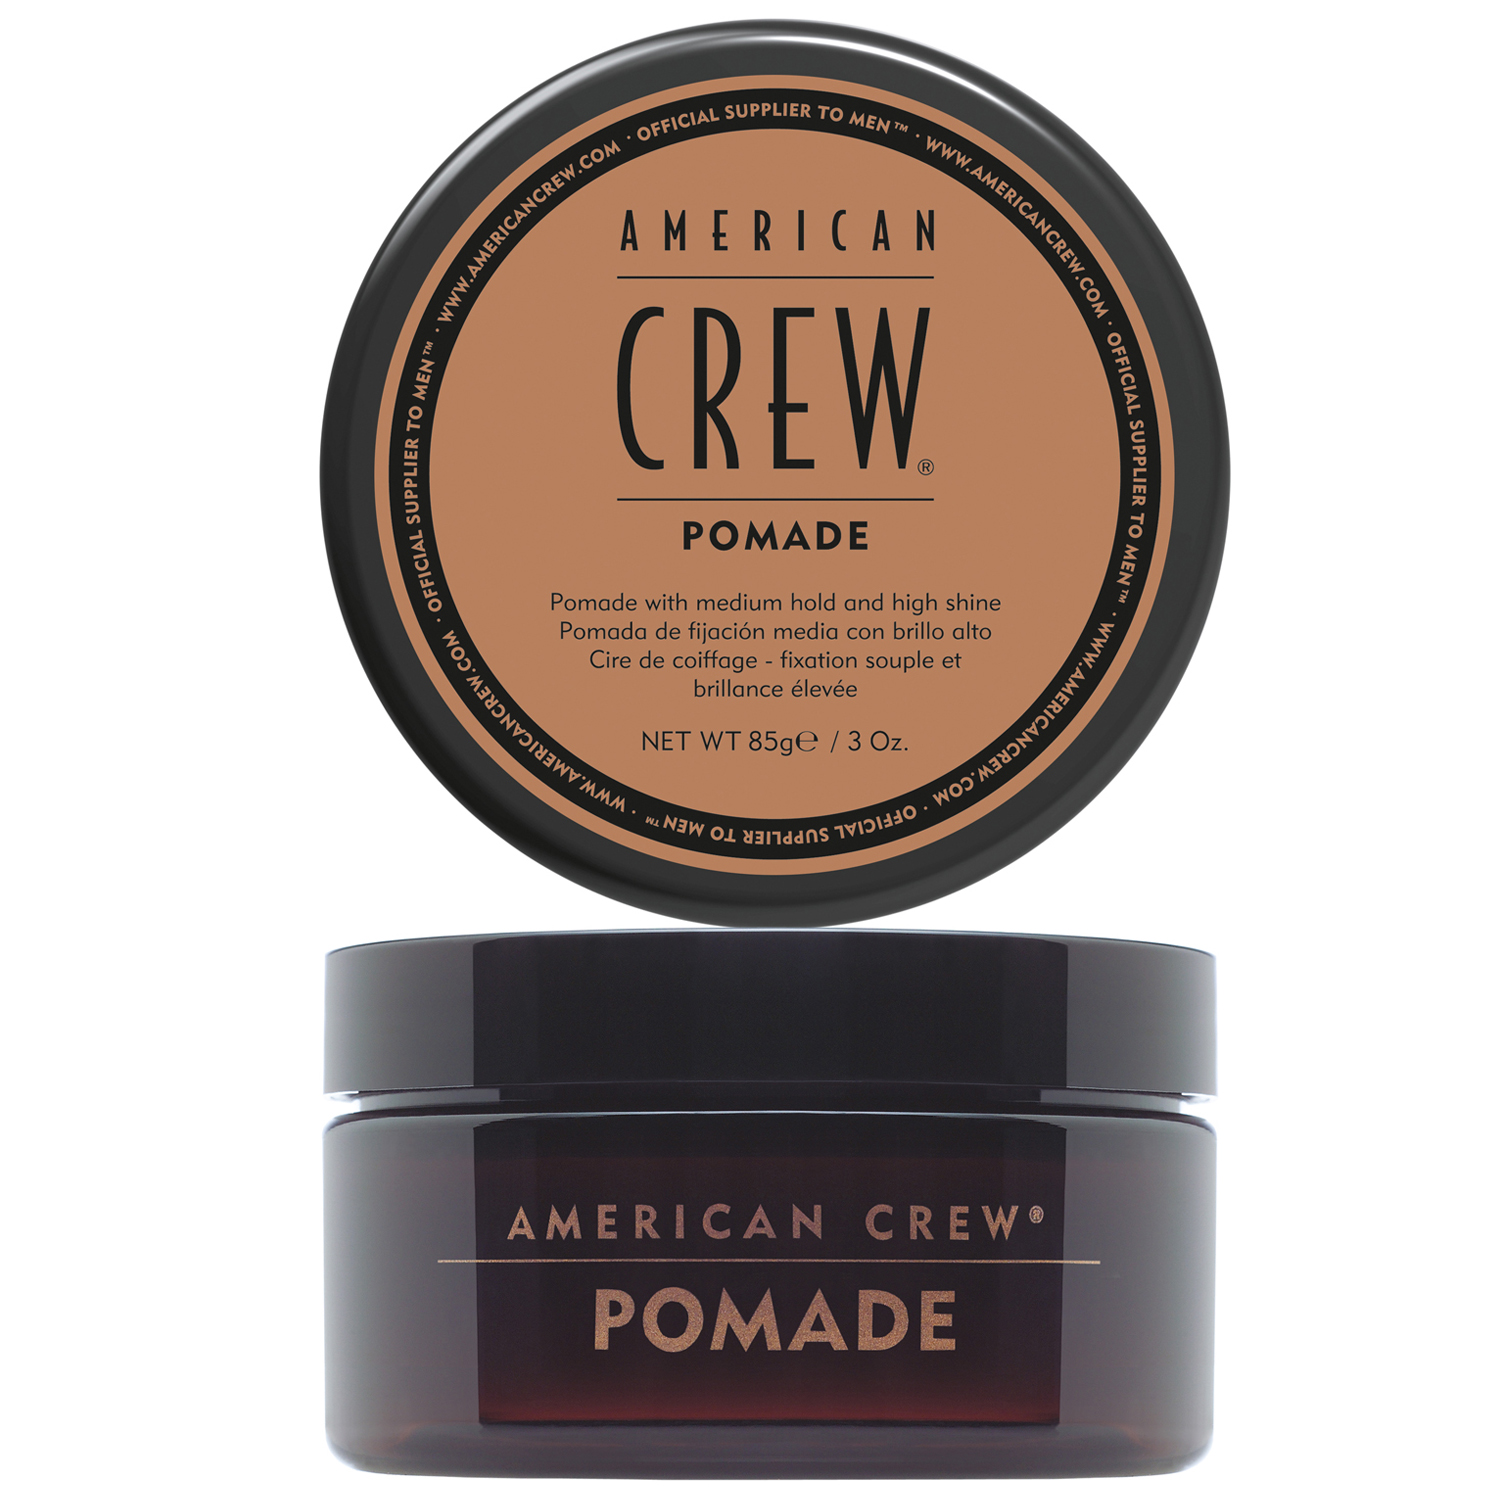 American Crew Помада для укладки волос средней фиксации Pomade, 85 мл (American Crew, Styling) american crew pomade помада средней фиксации для укладки волос 85 гр